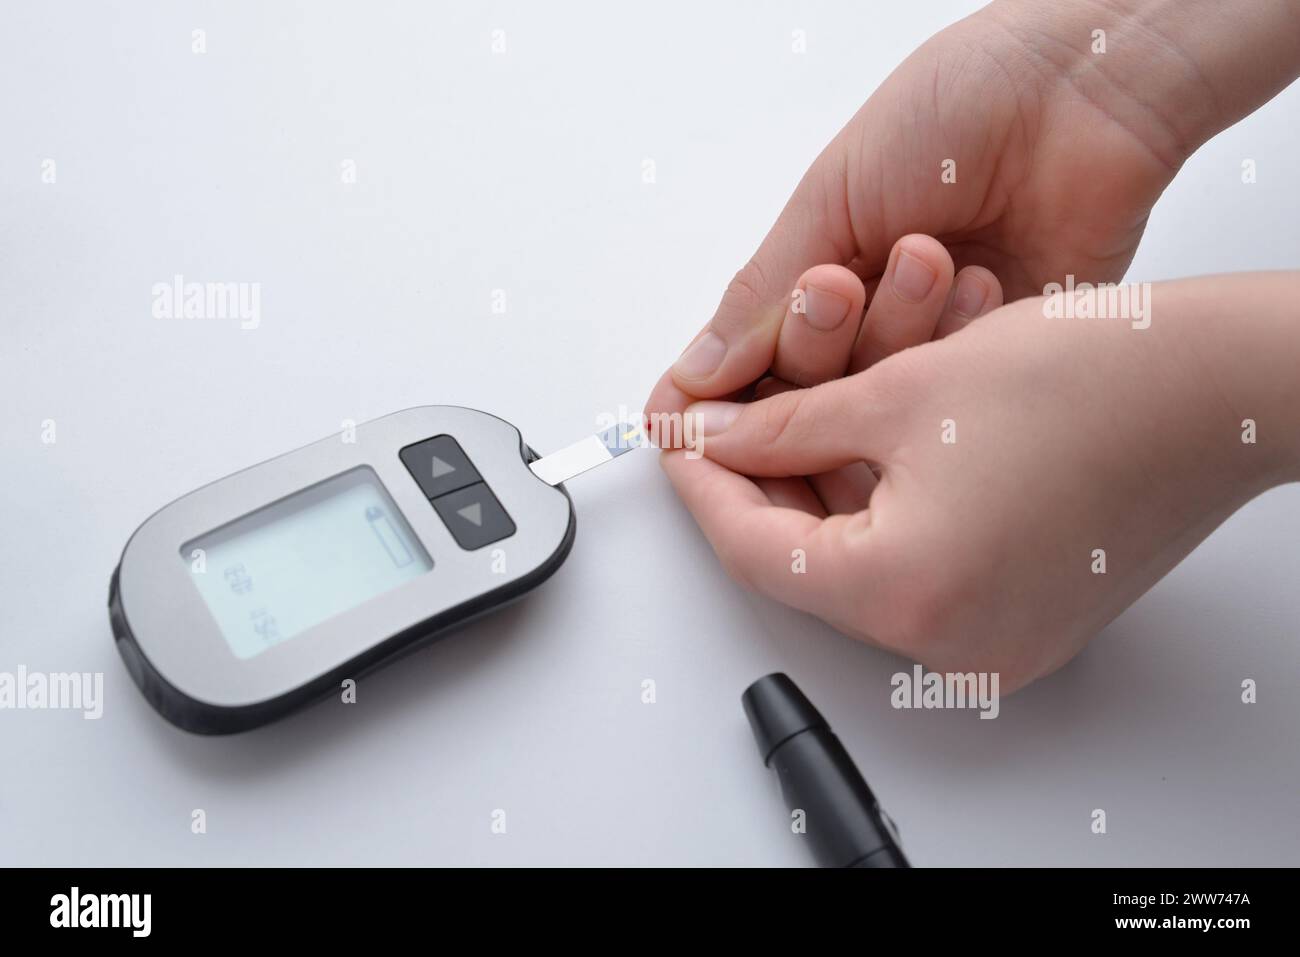 Applicazione del sangue dal dito alla striscia e dispositivo per la misurazione dei livelli di glucosio nel sangue. Concetto di monitoraggio della salute e gestione del diabete Foto Stock